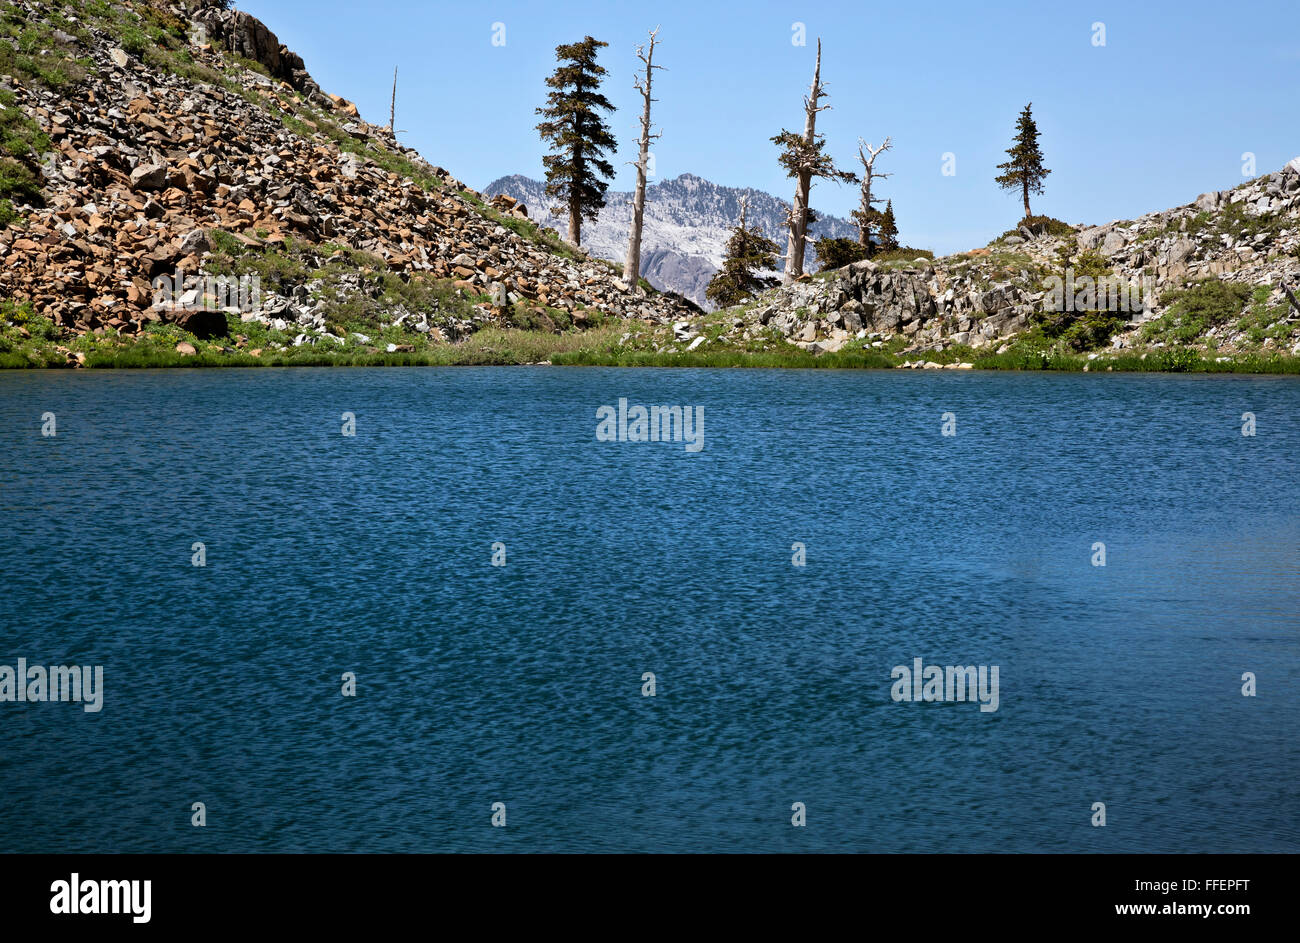 CA02825-00...CALIFORNIE - Deer Lake sur les quatre lacs boucle dans la réserve intégrale, Alpes Trinity Shasta-Trinity National Forest. Banque D'Images